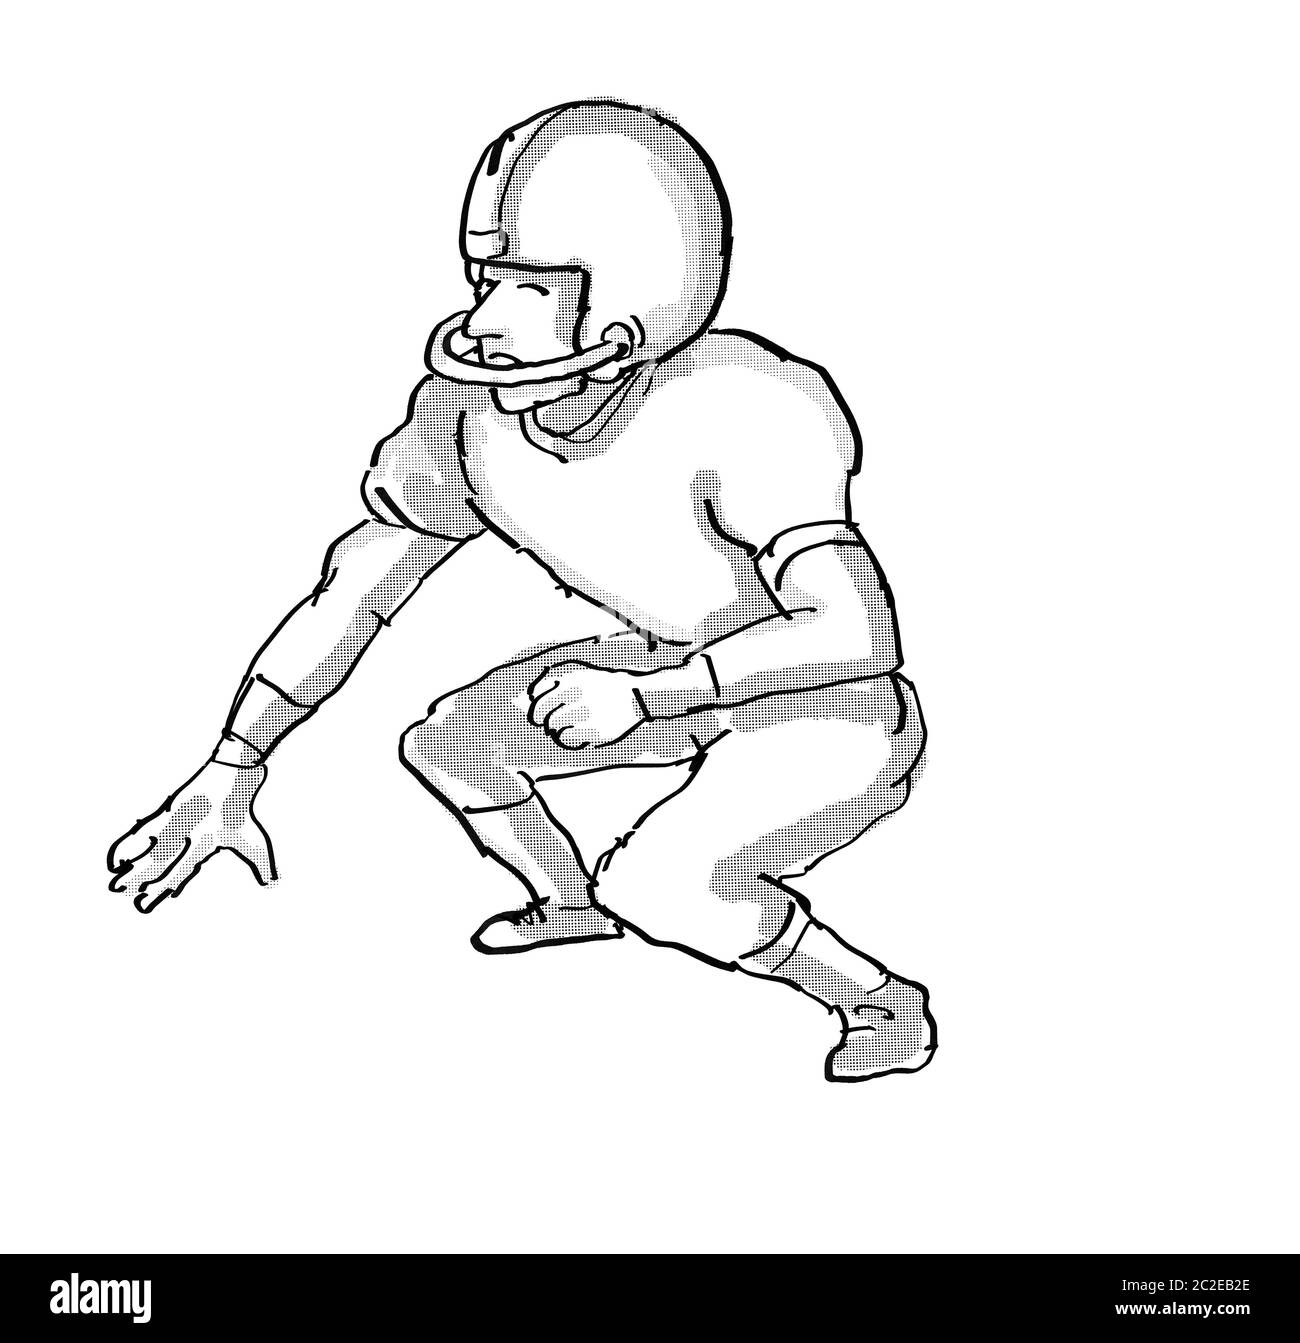 Cartoon style illustration d'un joueur de football américain en noir et blanc sur fond blanc isolé Banque D'Images